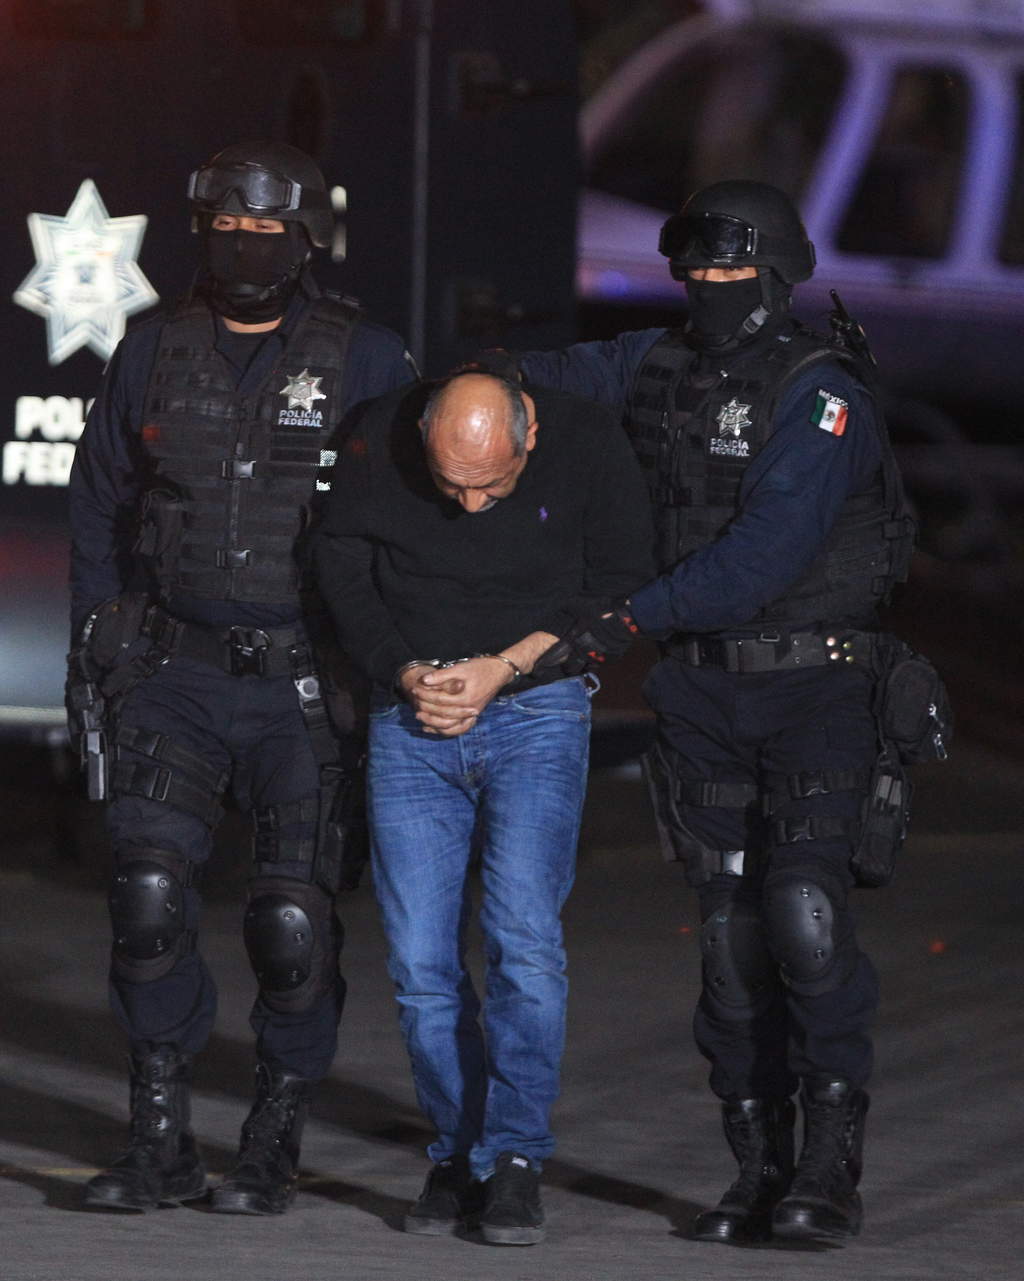 Detenido. En la imagen, Servando Gómez “La Tuta” es trasladado por dos agentes de la Policía Federal.